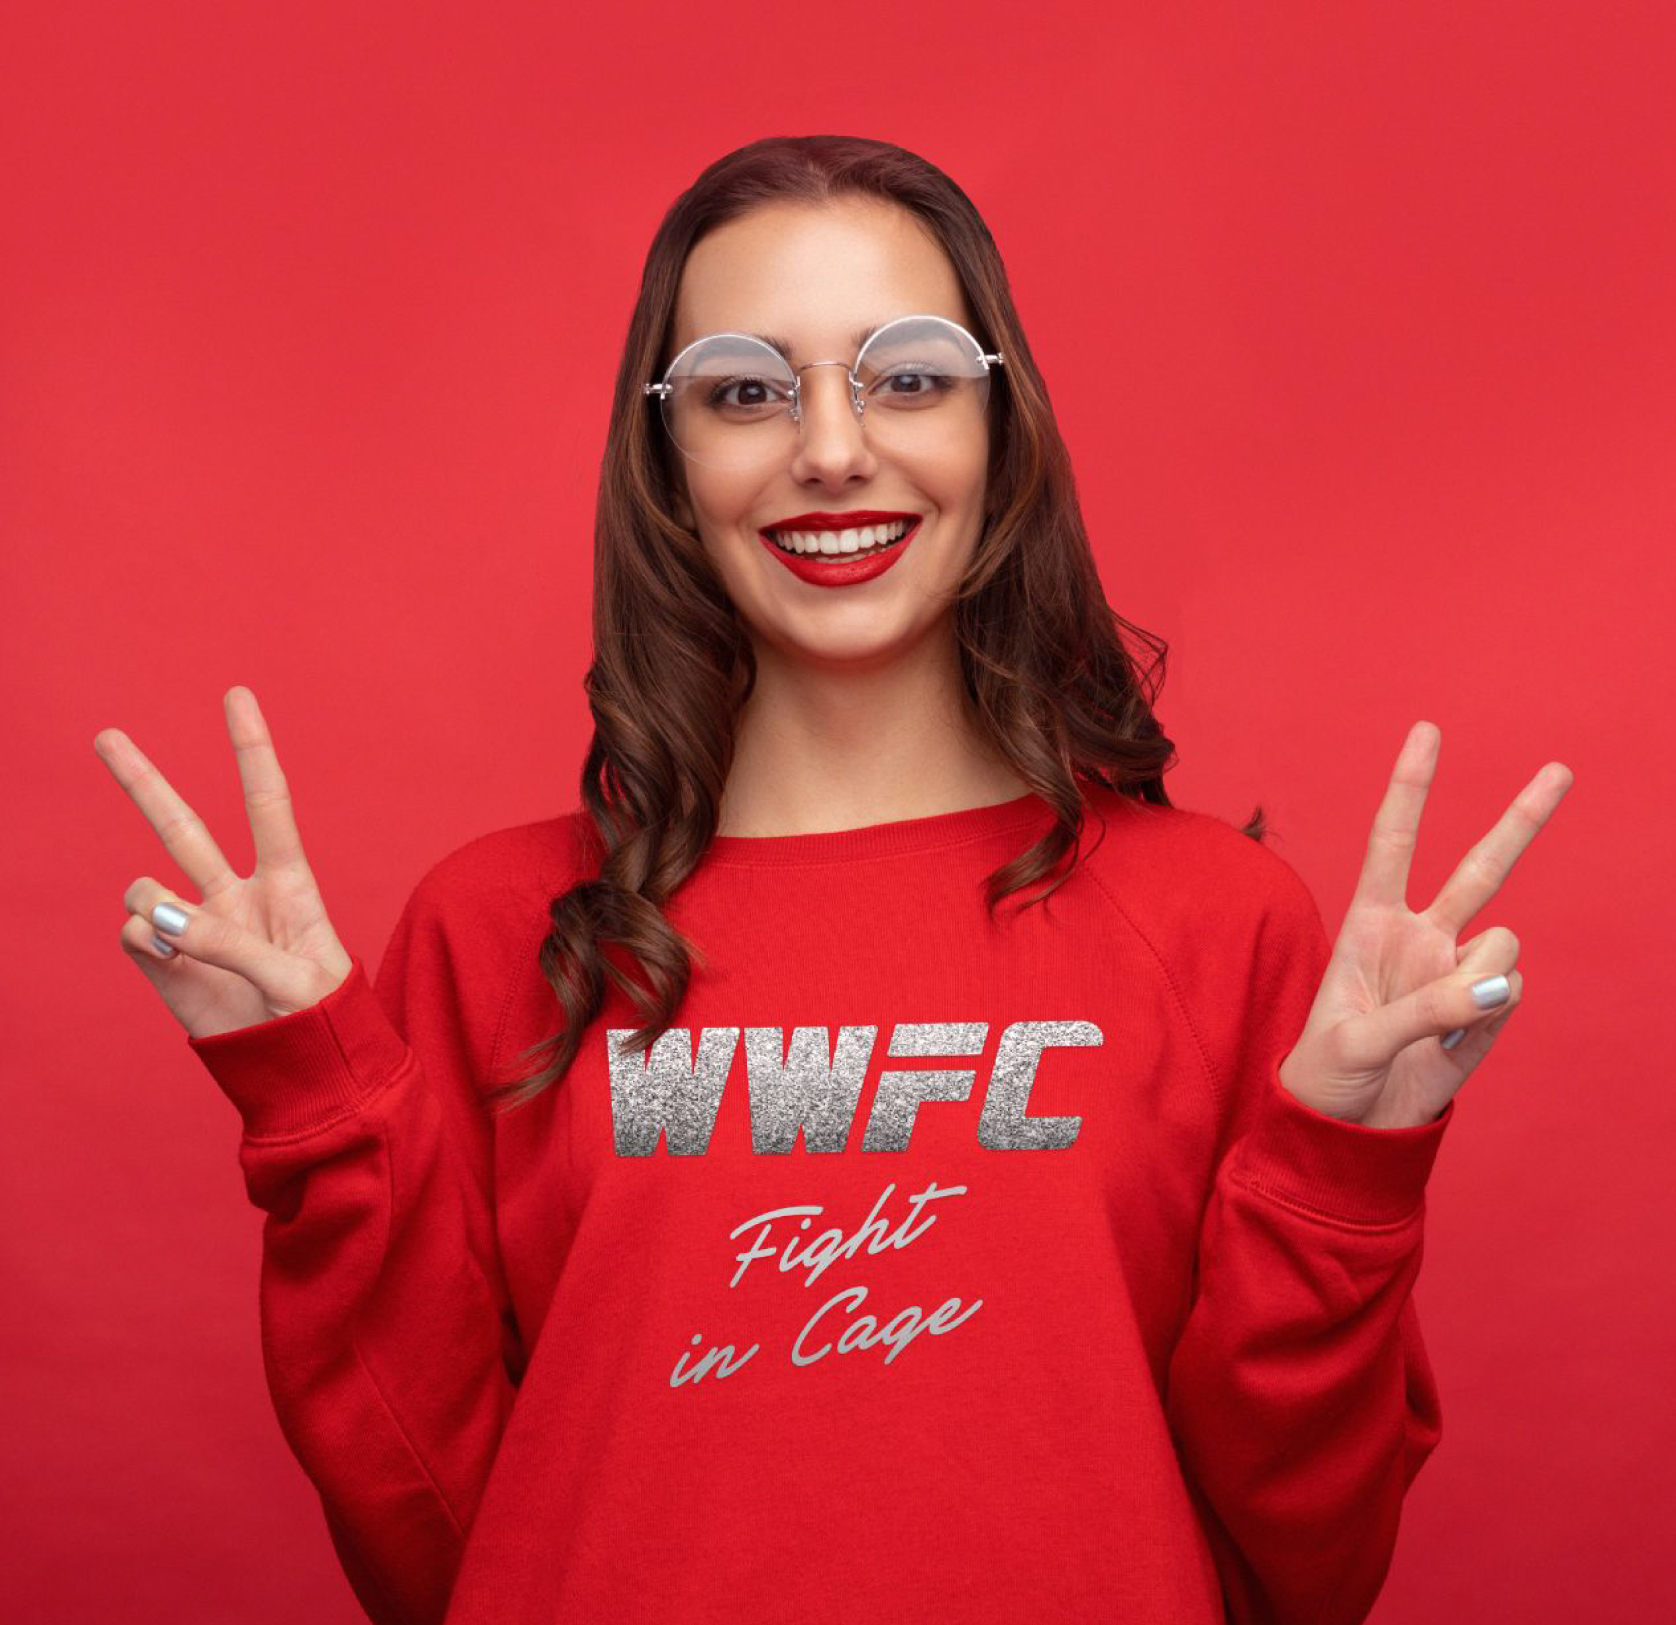 WWFC Fight in cage sweatshirt women